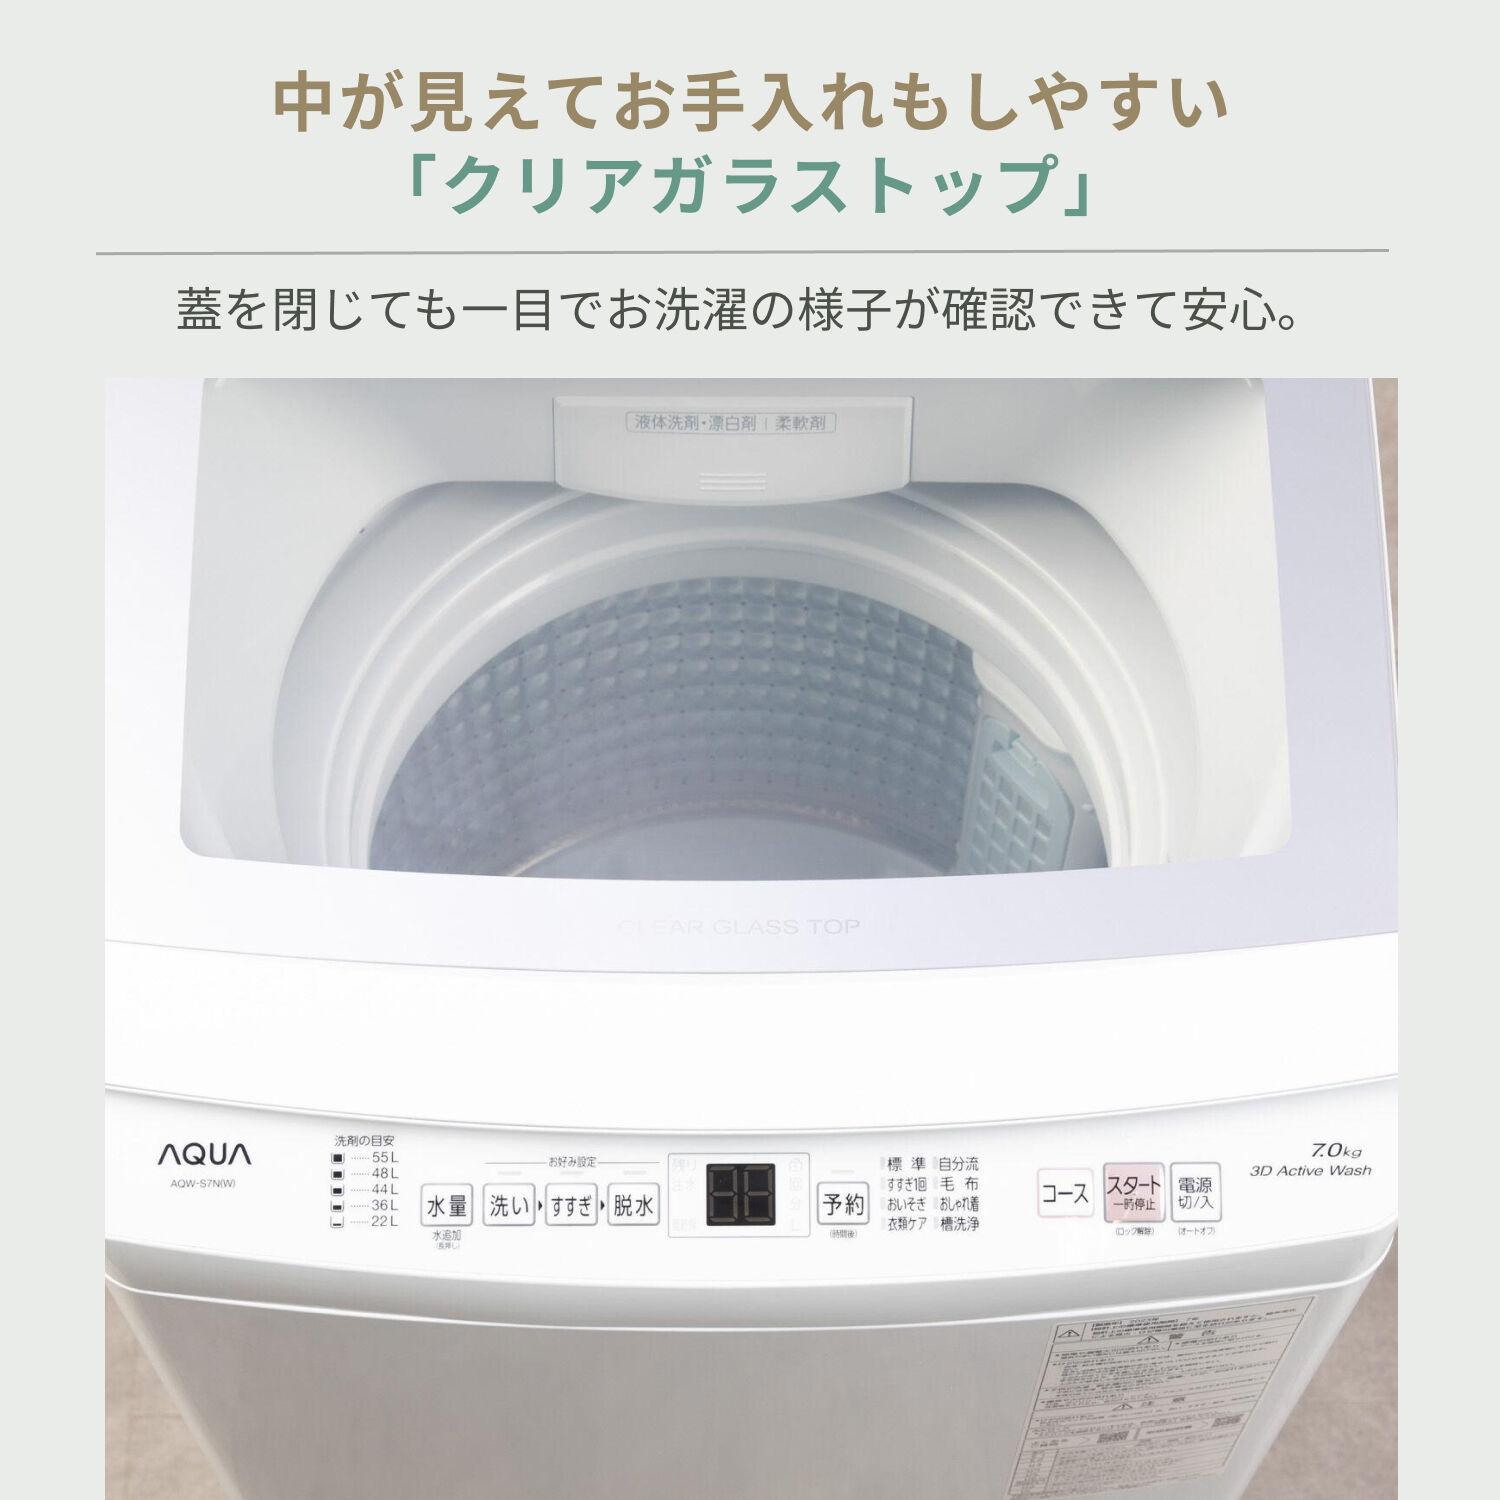 AQUA 全自動洗濯機 7kg 型番おまかせ AQUA / アクアのレンタル 